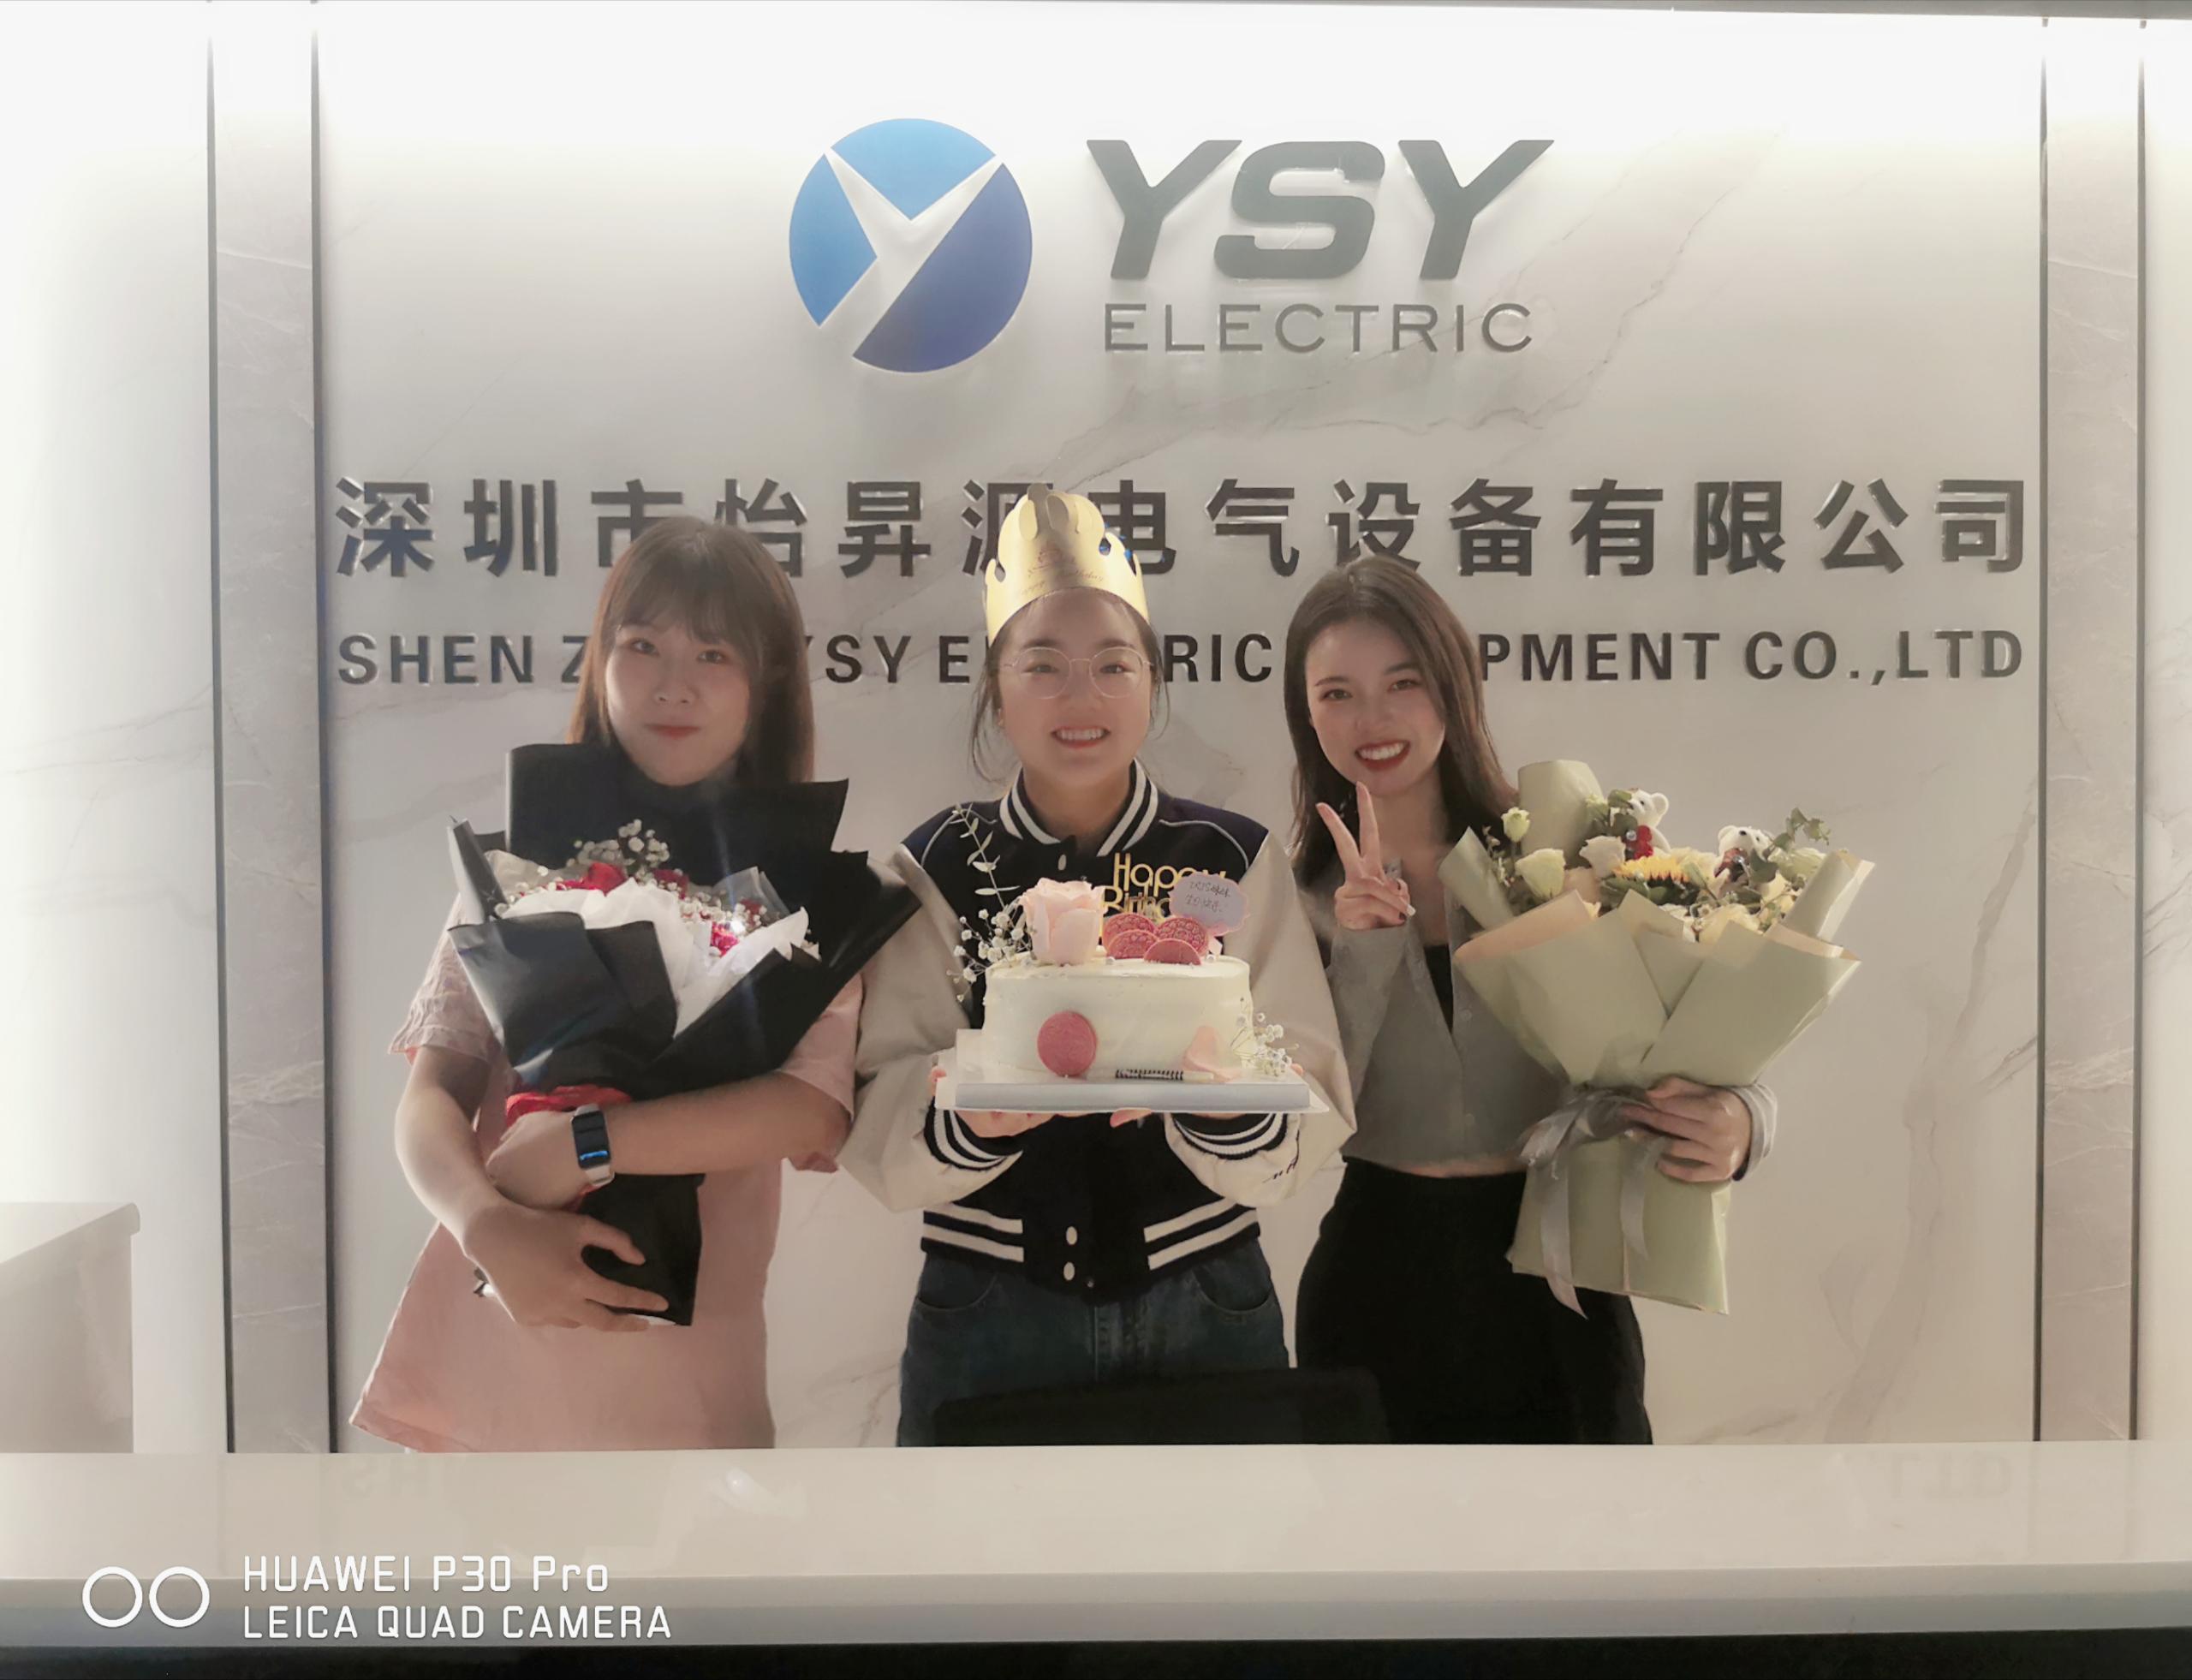 Selamat ulang tahun ke 2 sales YSY Electric!